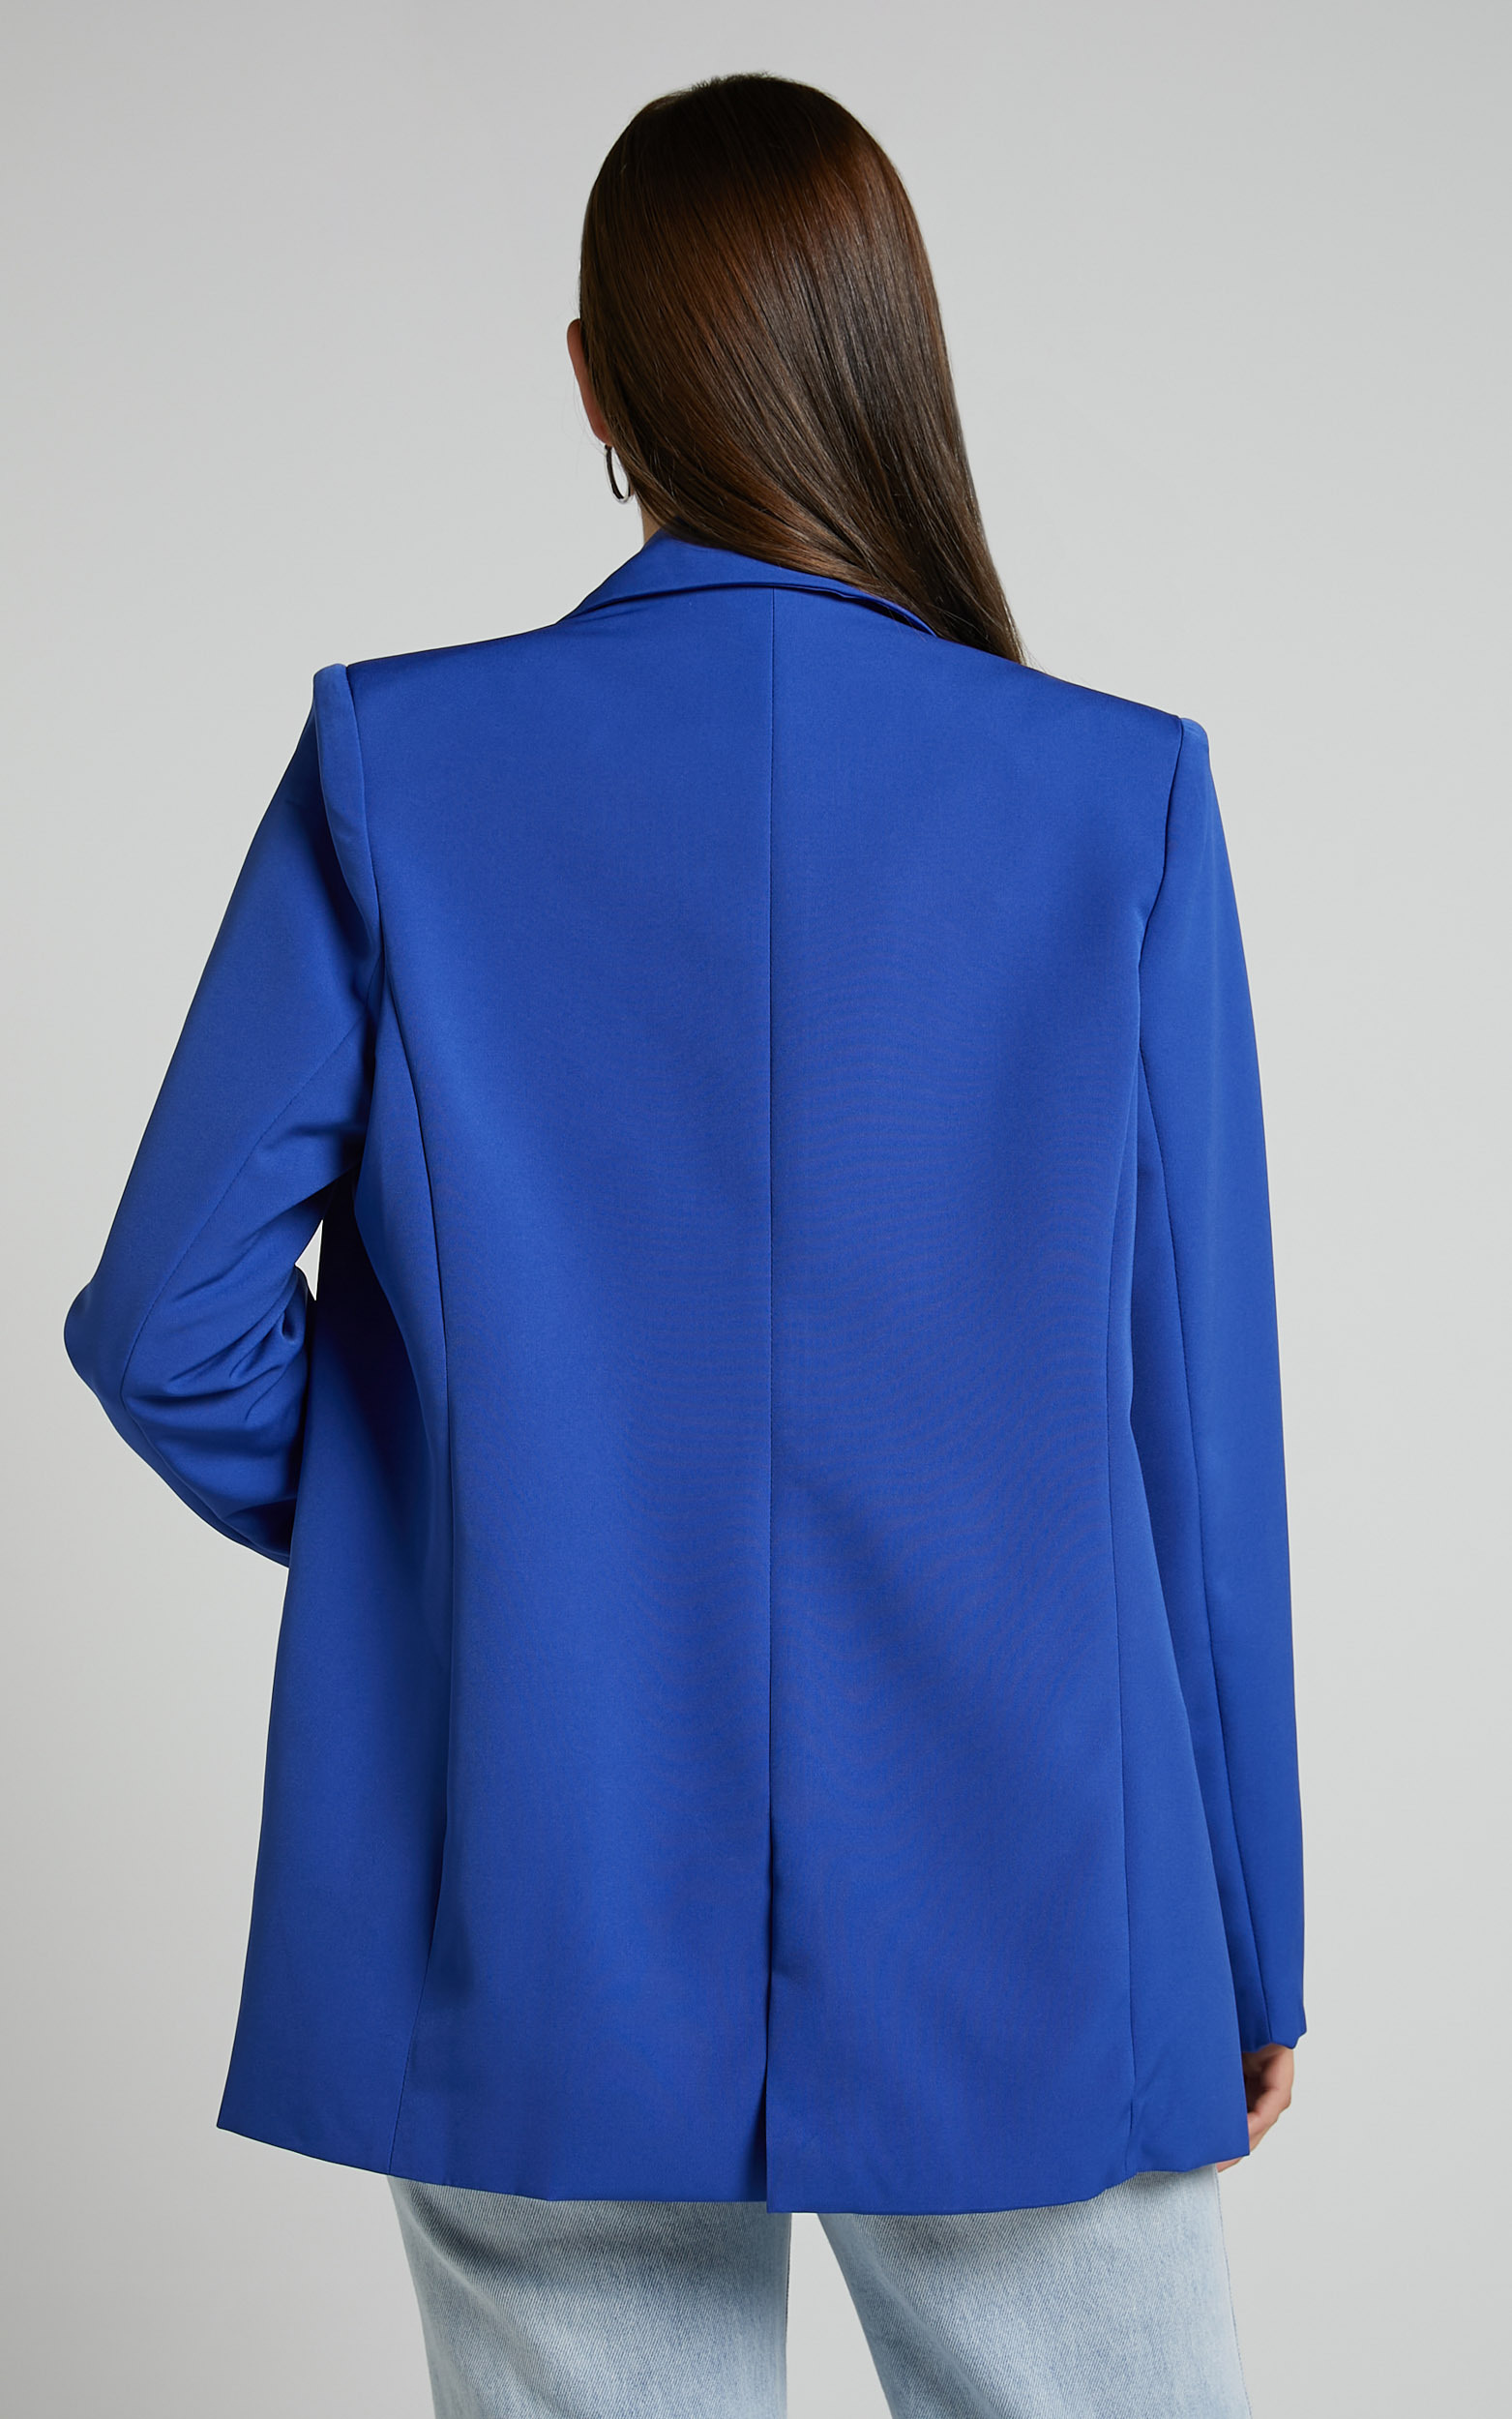 Sharmiel Blazer - Plunge Neck Oversized Longline Blazer in Cobalt Blue